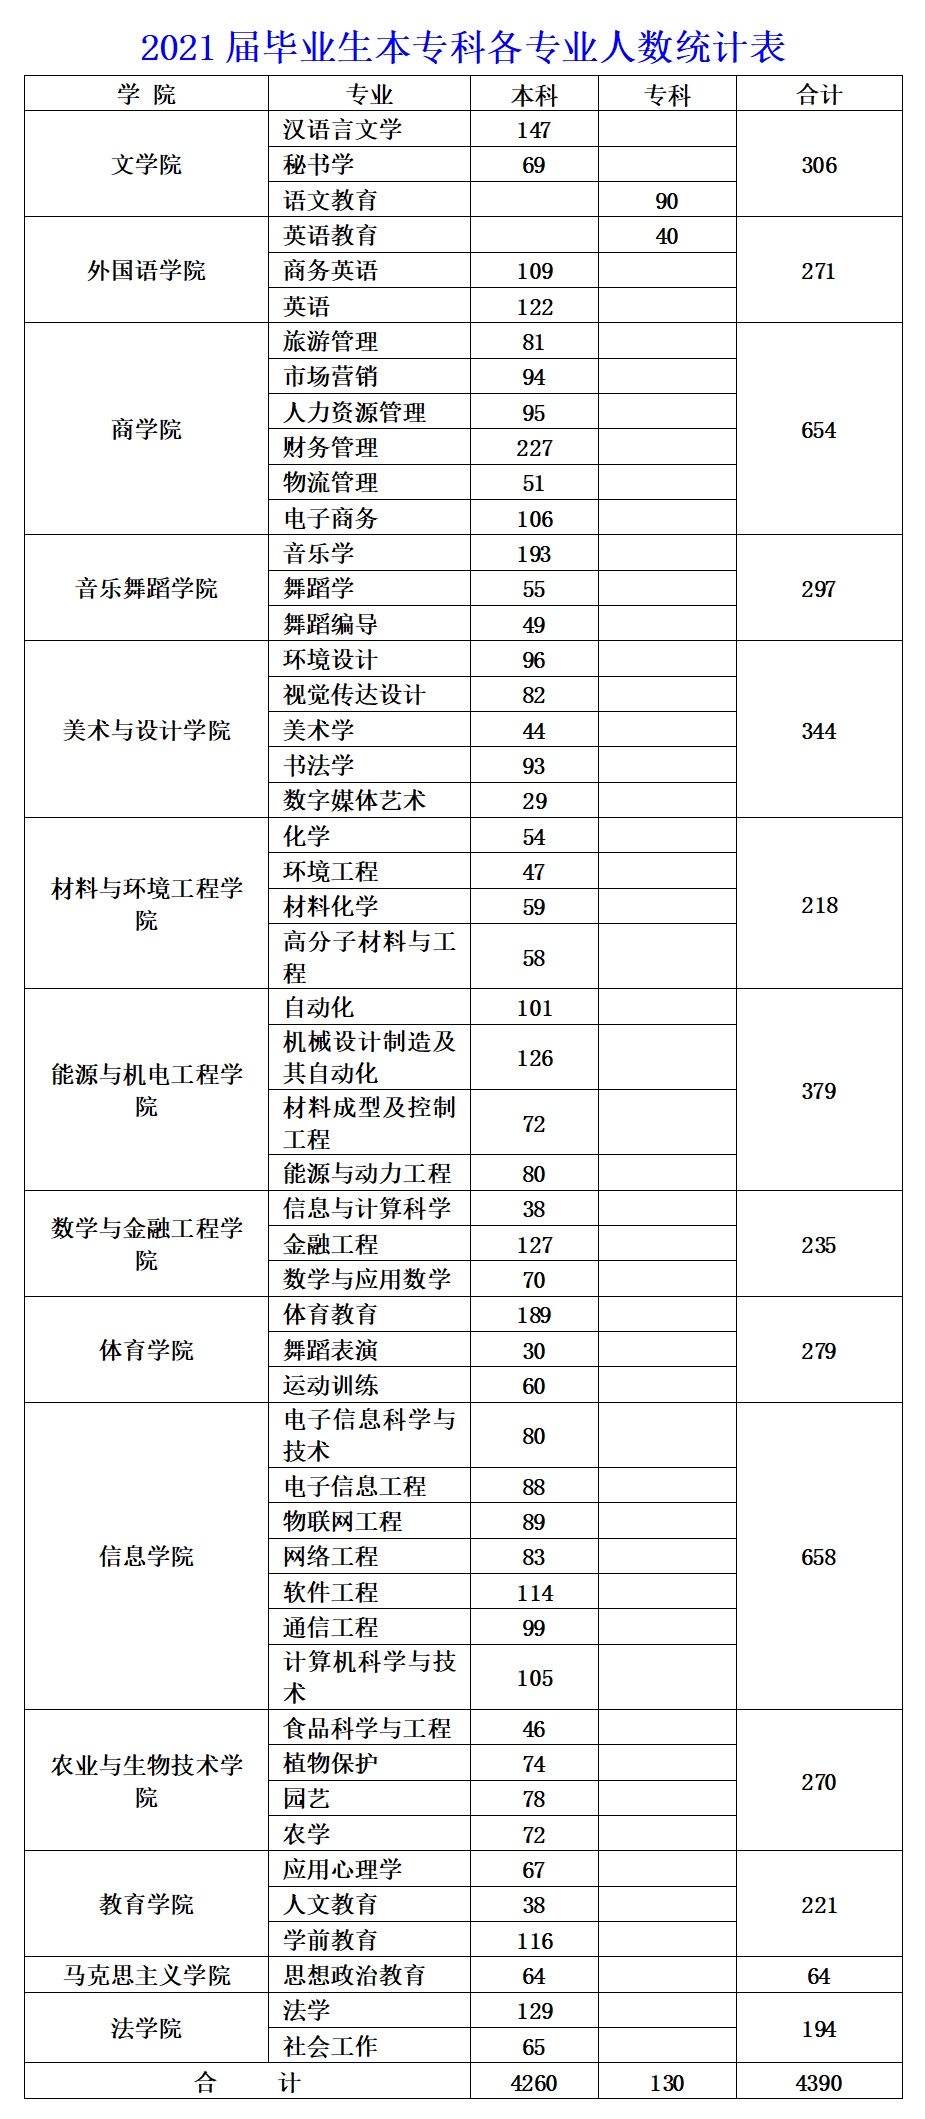 [2021年4月22日]湖南人文科技學院2021屆畢業生春季校園雙選會